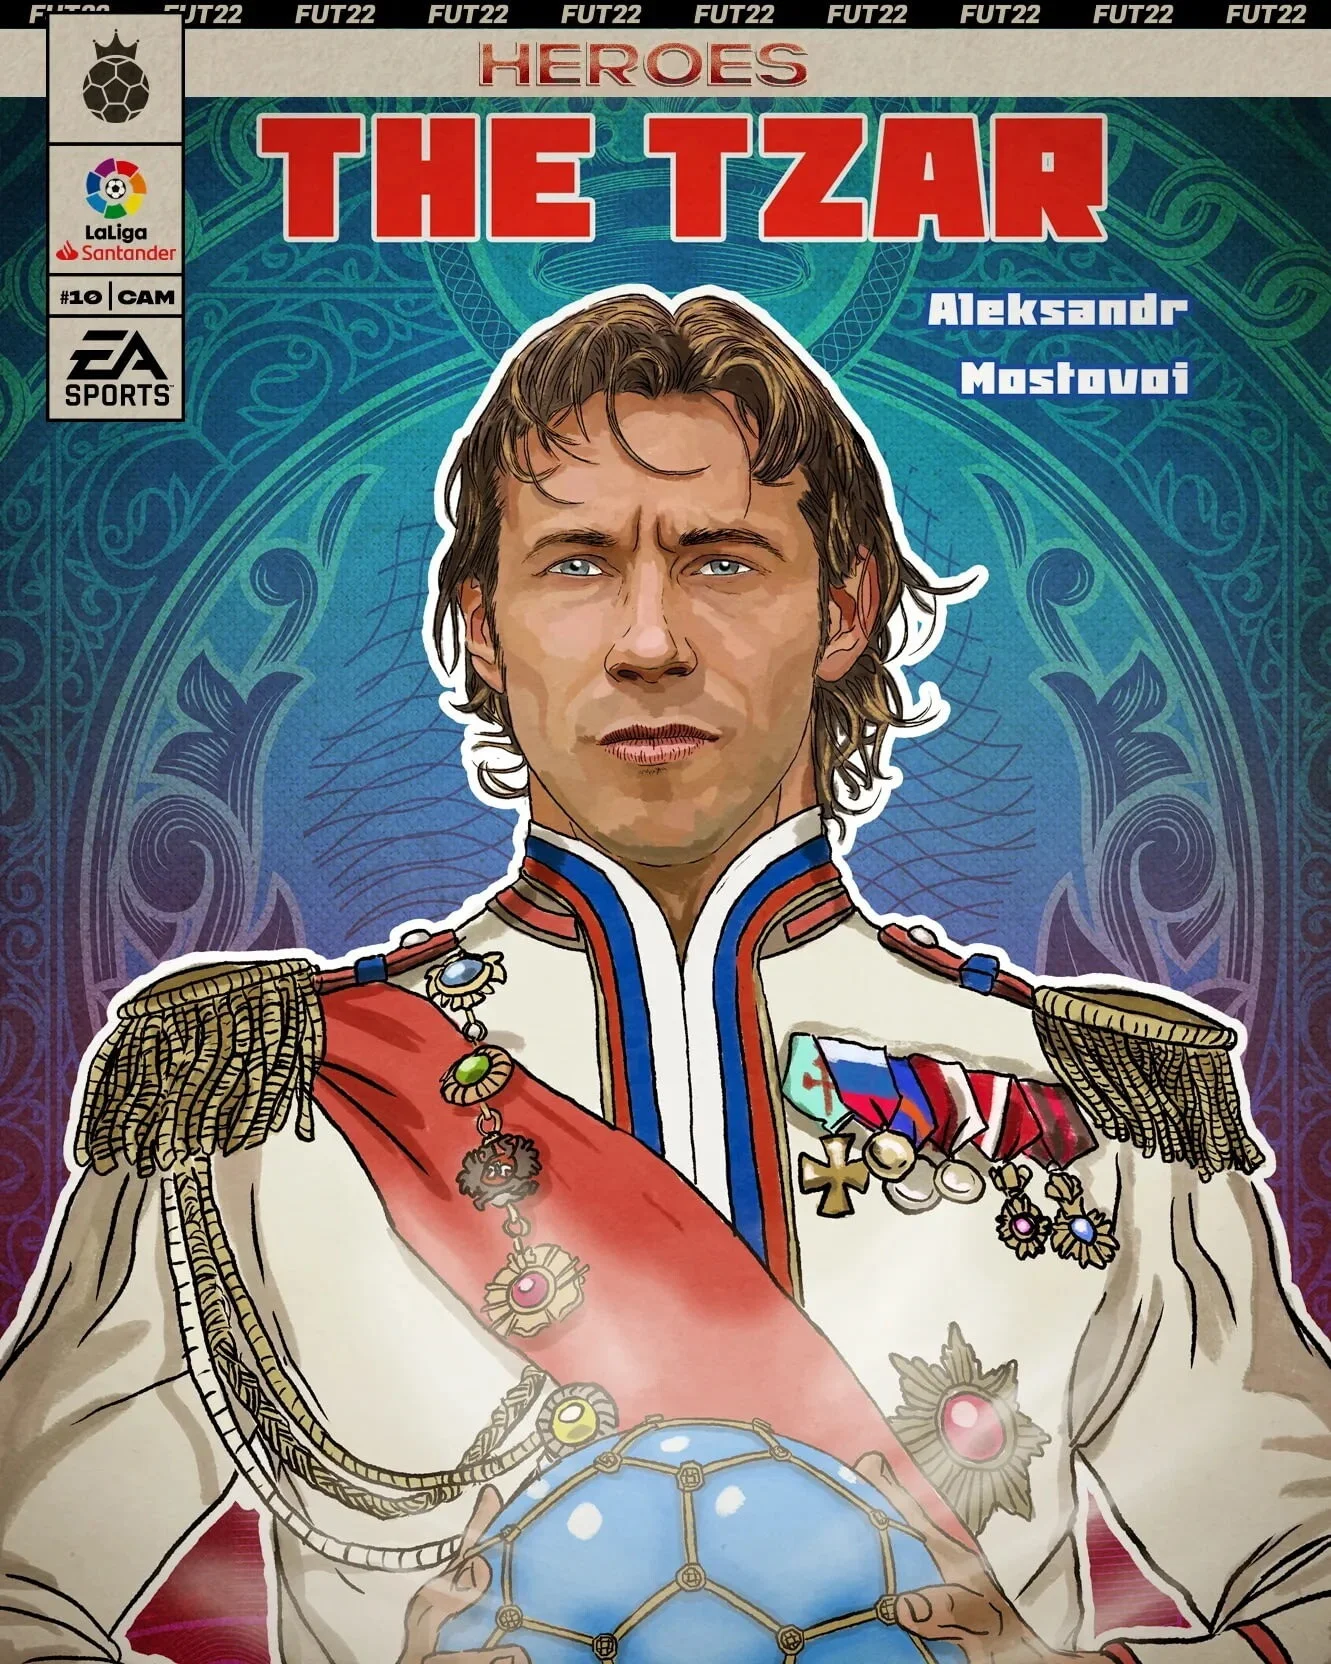 Из FIFA 23 удалили набор Александра Мостового в облике российского царя - фото 1